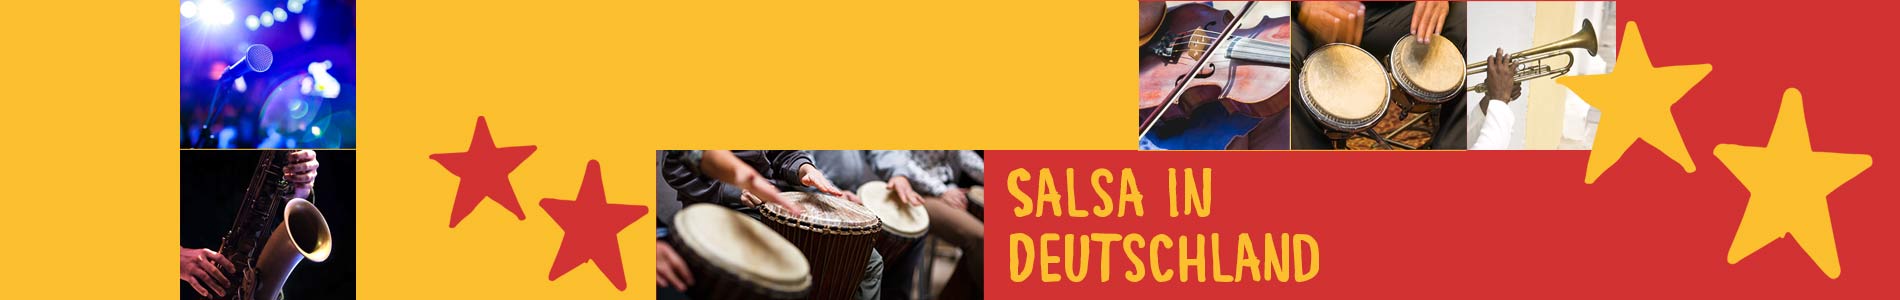 Salsa in Brügge – Salsa lernen und tanzen, Tanzkurse, Partys, Veranstaltungen